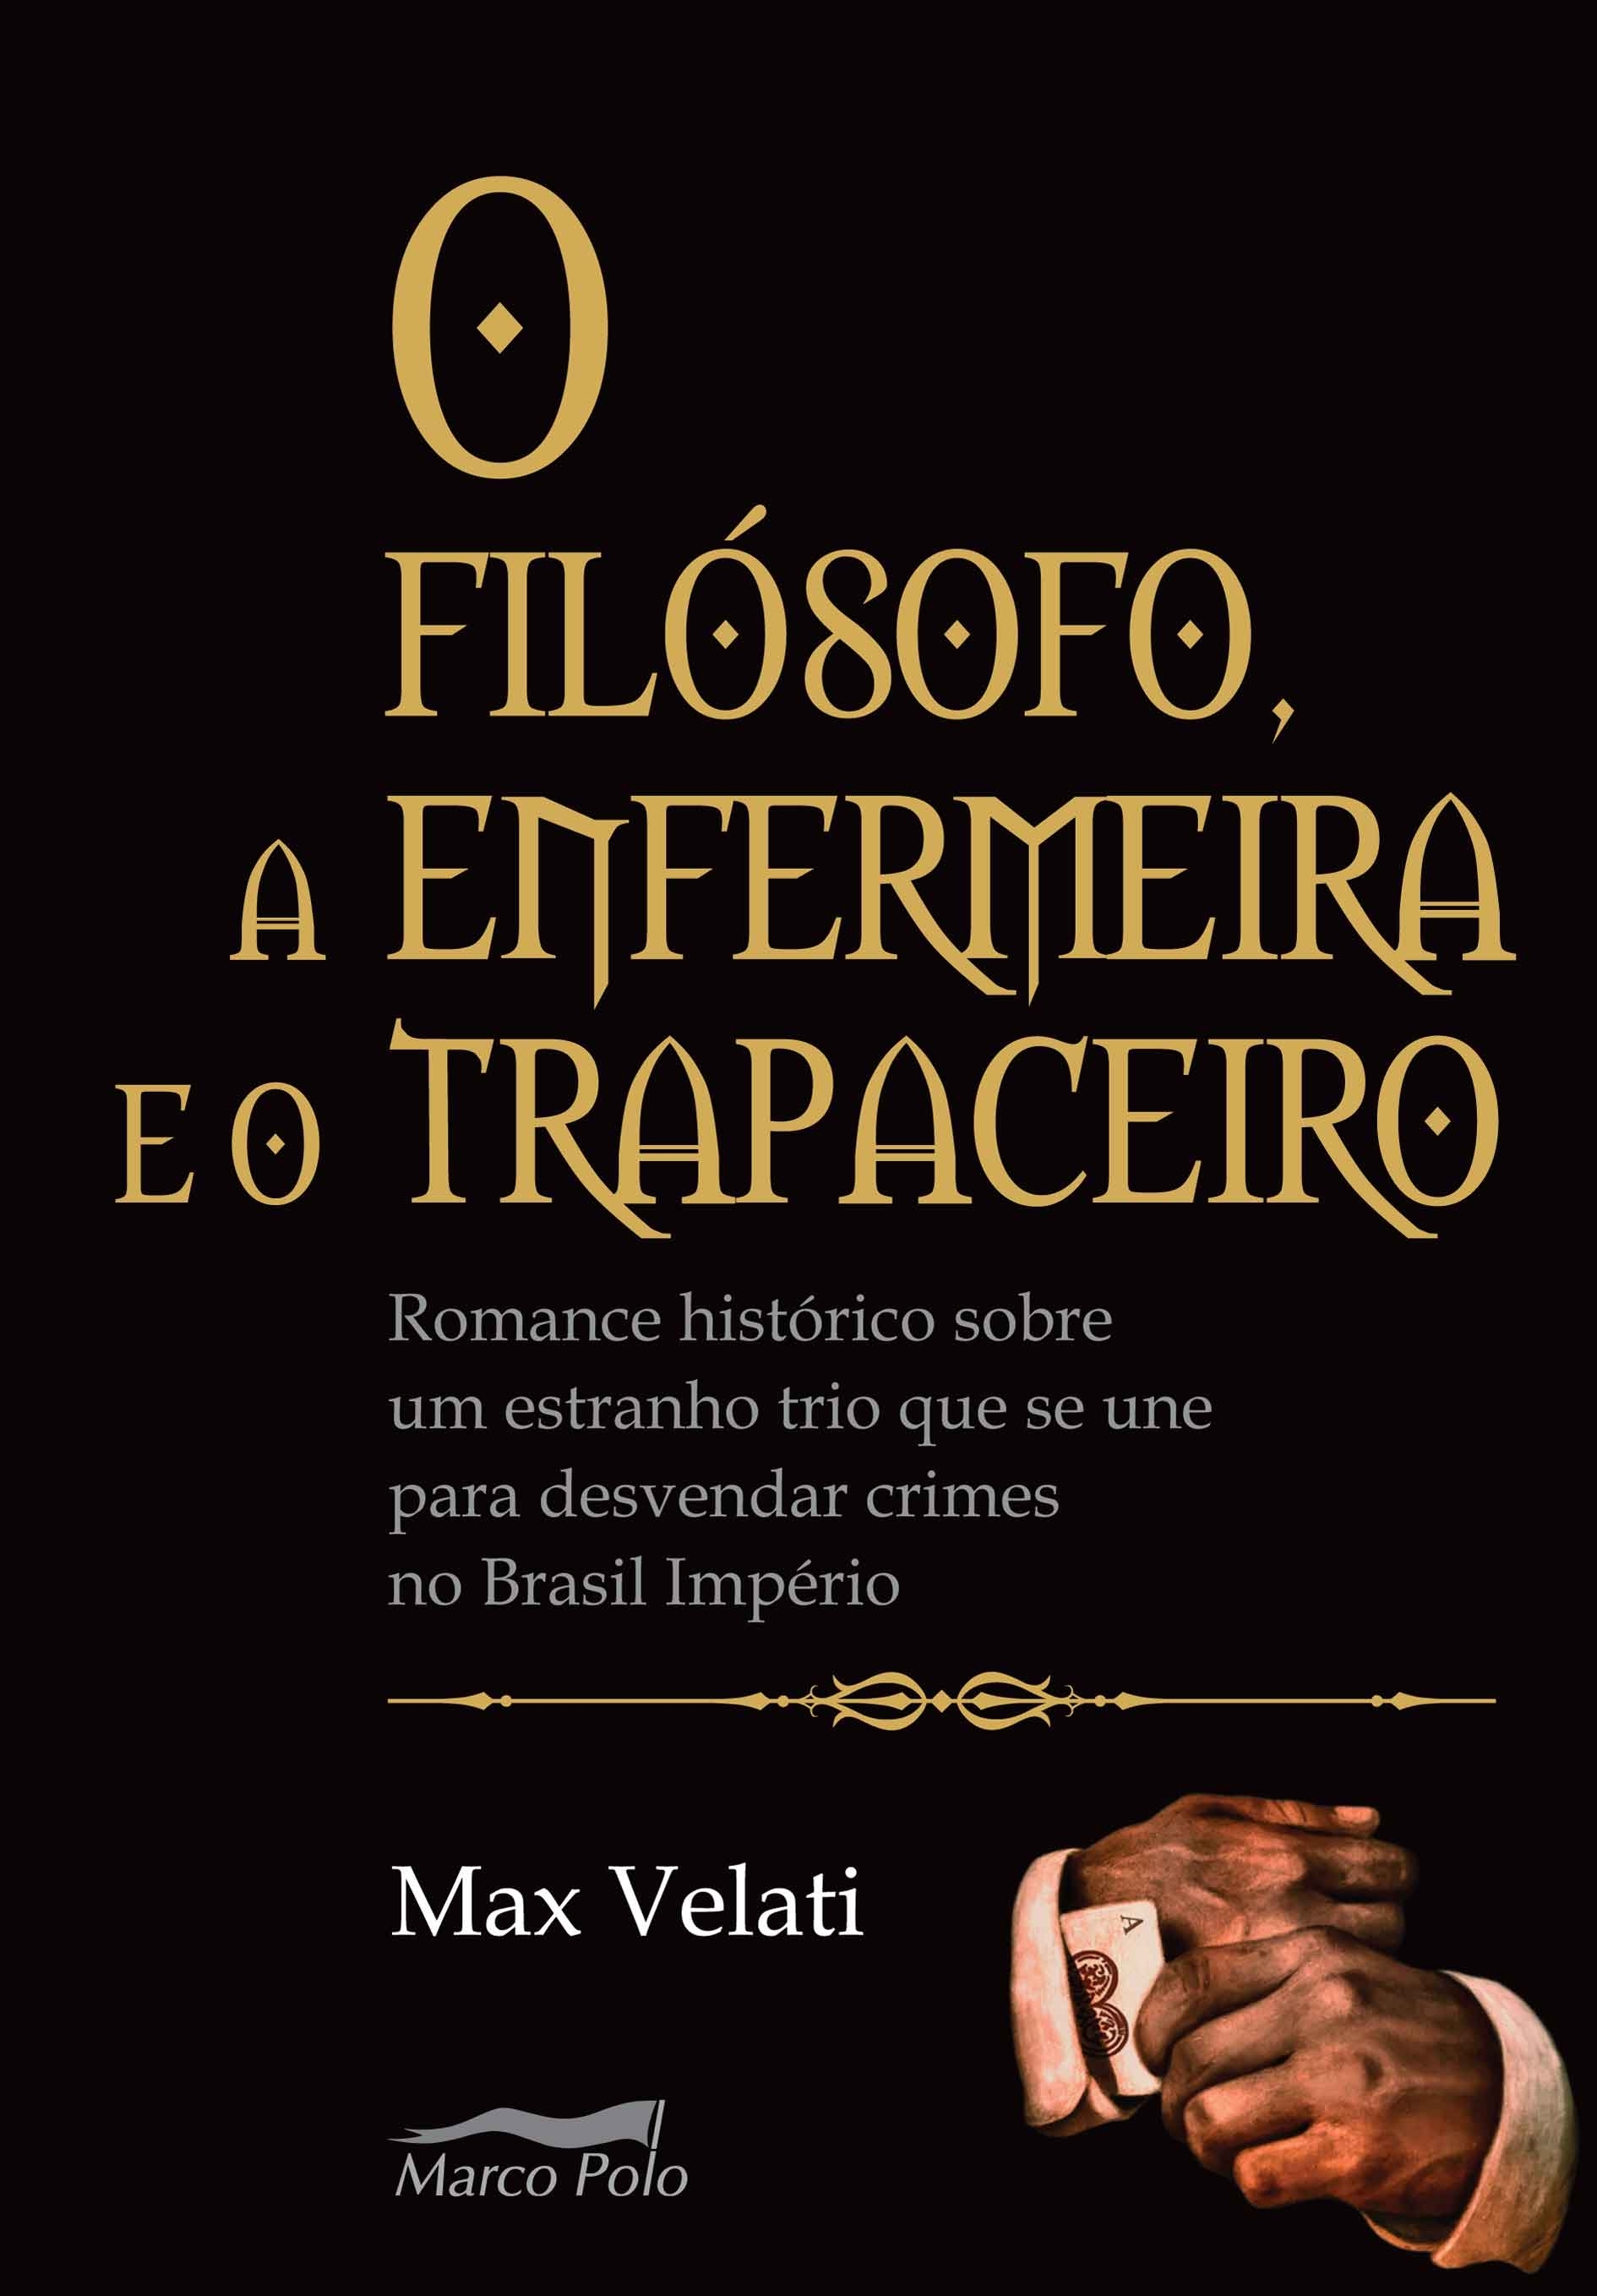 O filósofo, a enfermeira e o trapaceiro: romance histórico sobre um estranho trio que se une para desvendar crimes no Brasil Império